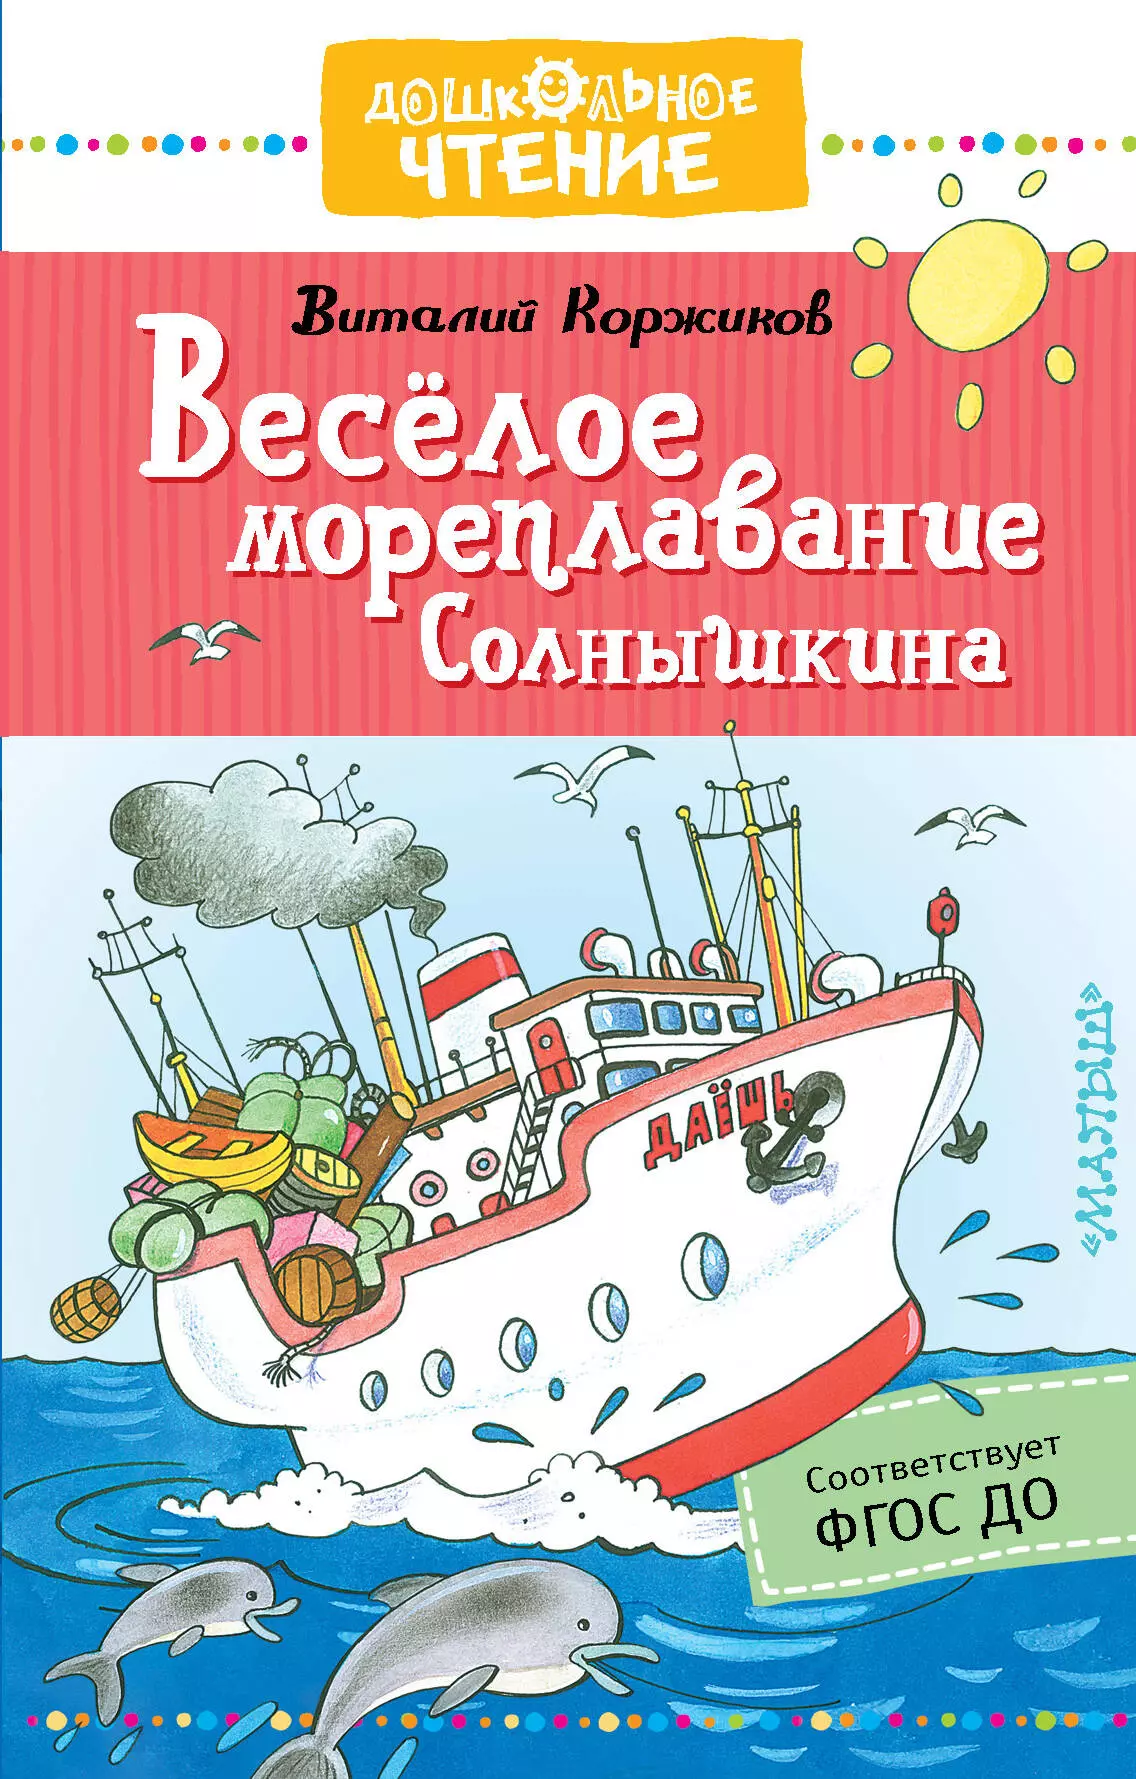 Коржиков Виталий Титович - Веселое мореплавание Солнышкина. Повесть